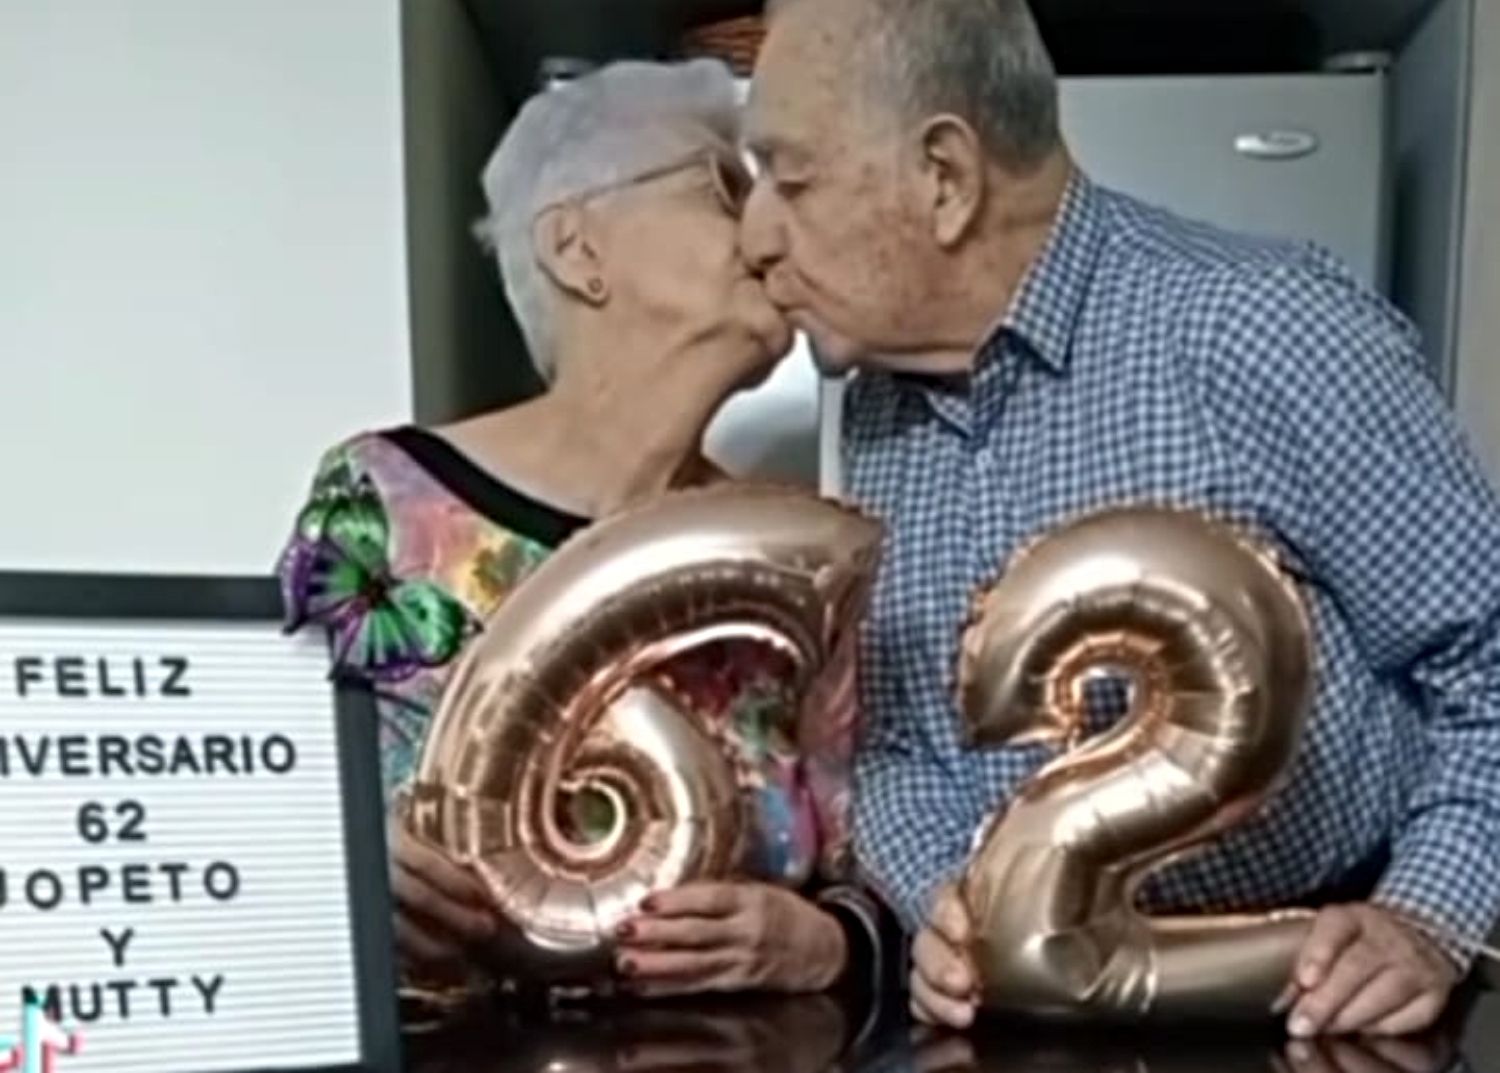 Jopeto y Mutty, la pareja 'tiktoker' que ha celebrado sus 62 años de casados con un vídeo viral. Foto: TikTok